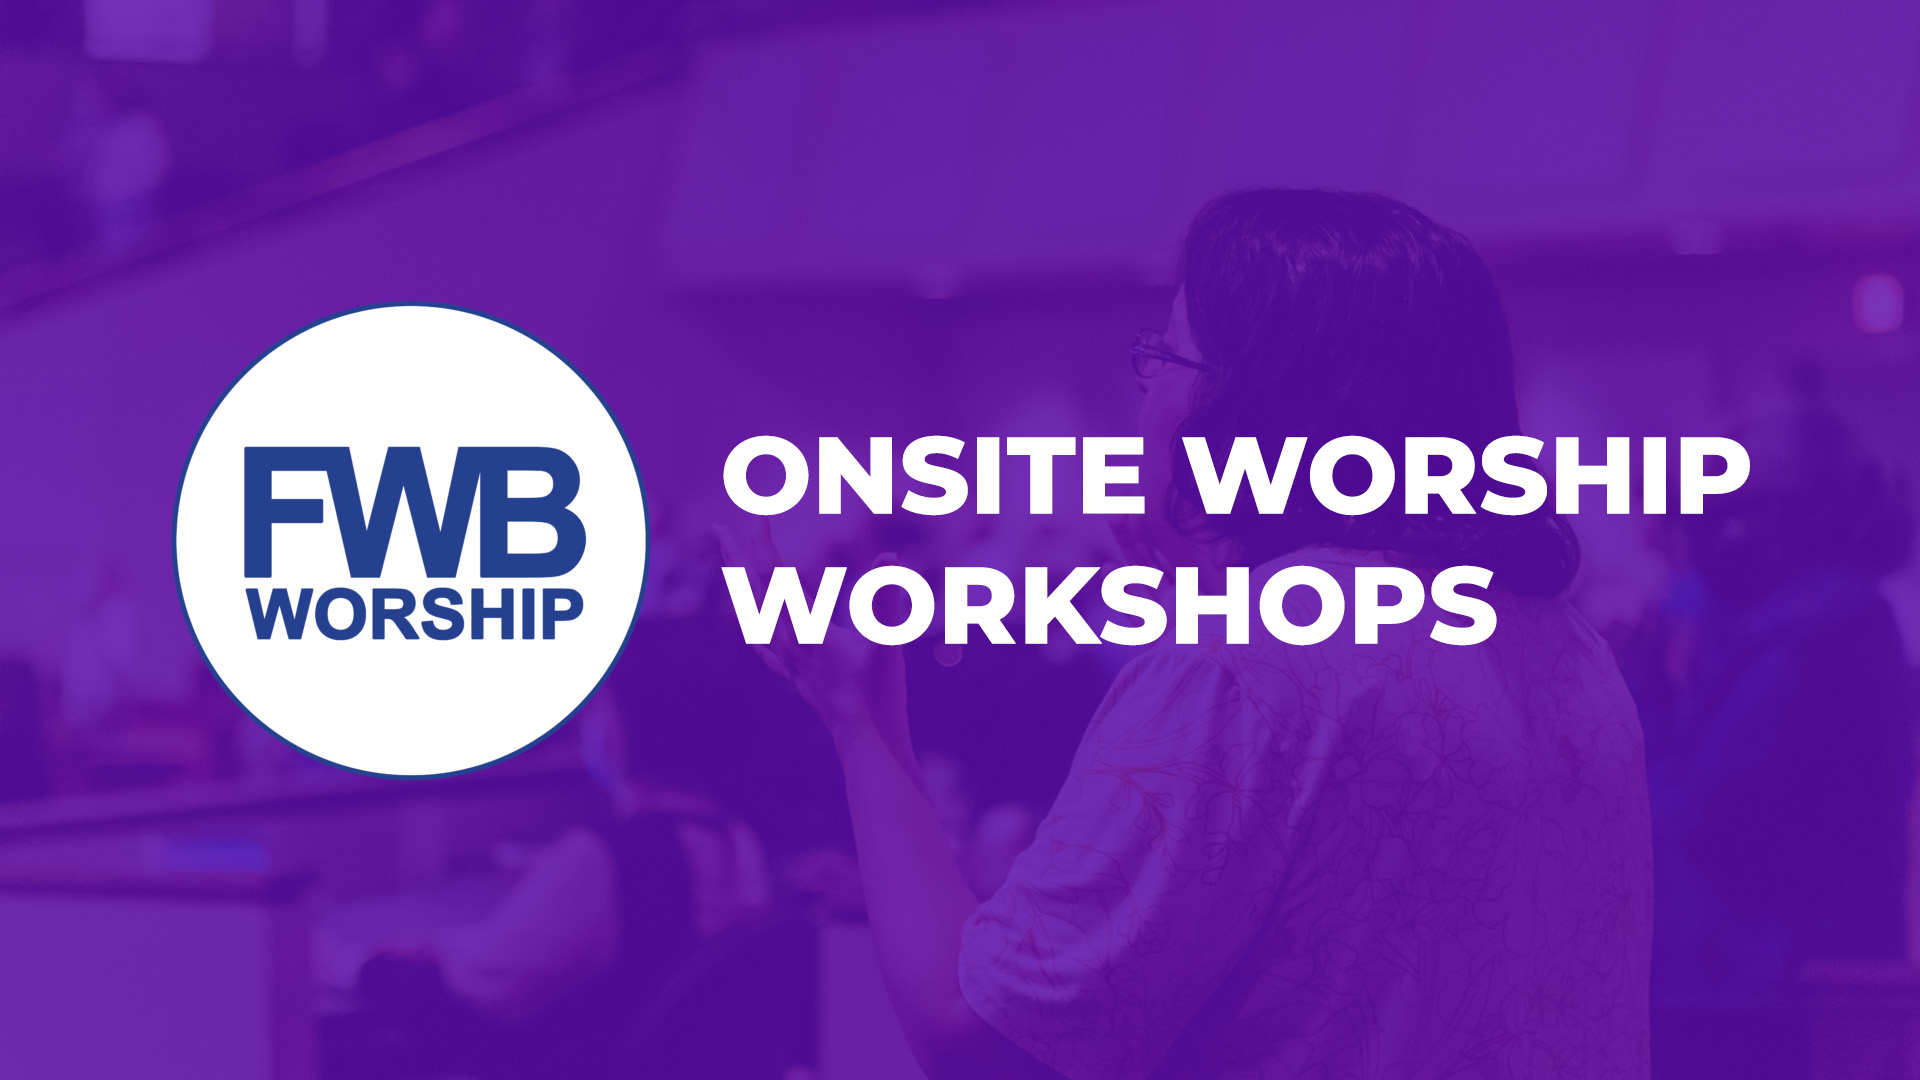 Onsite-Worship-Workshps-fwbworship